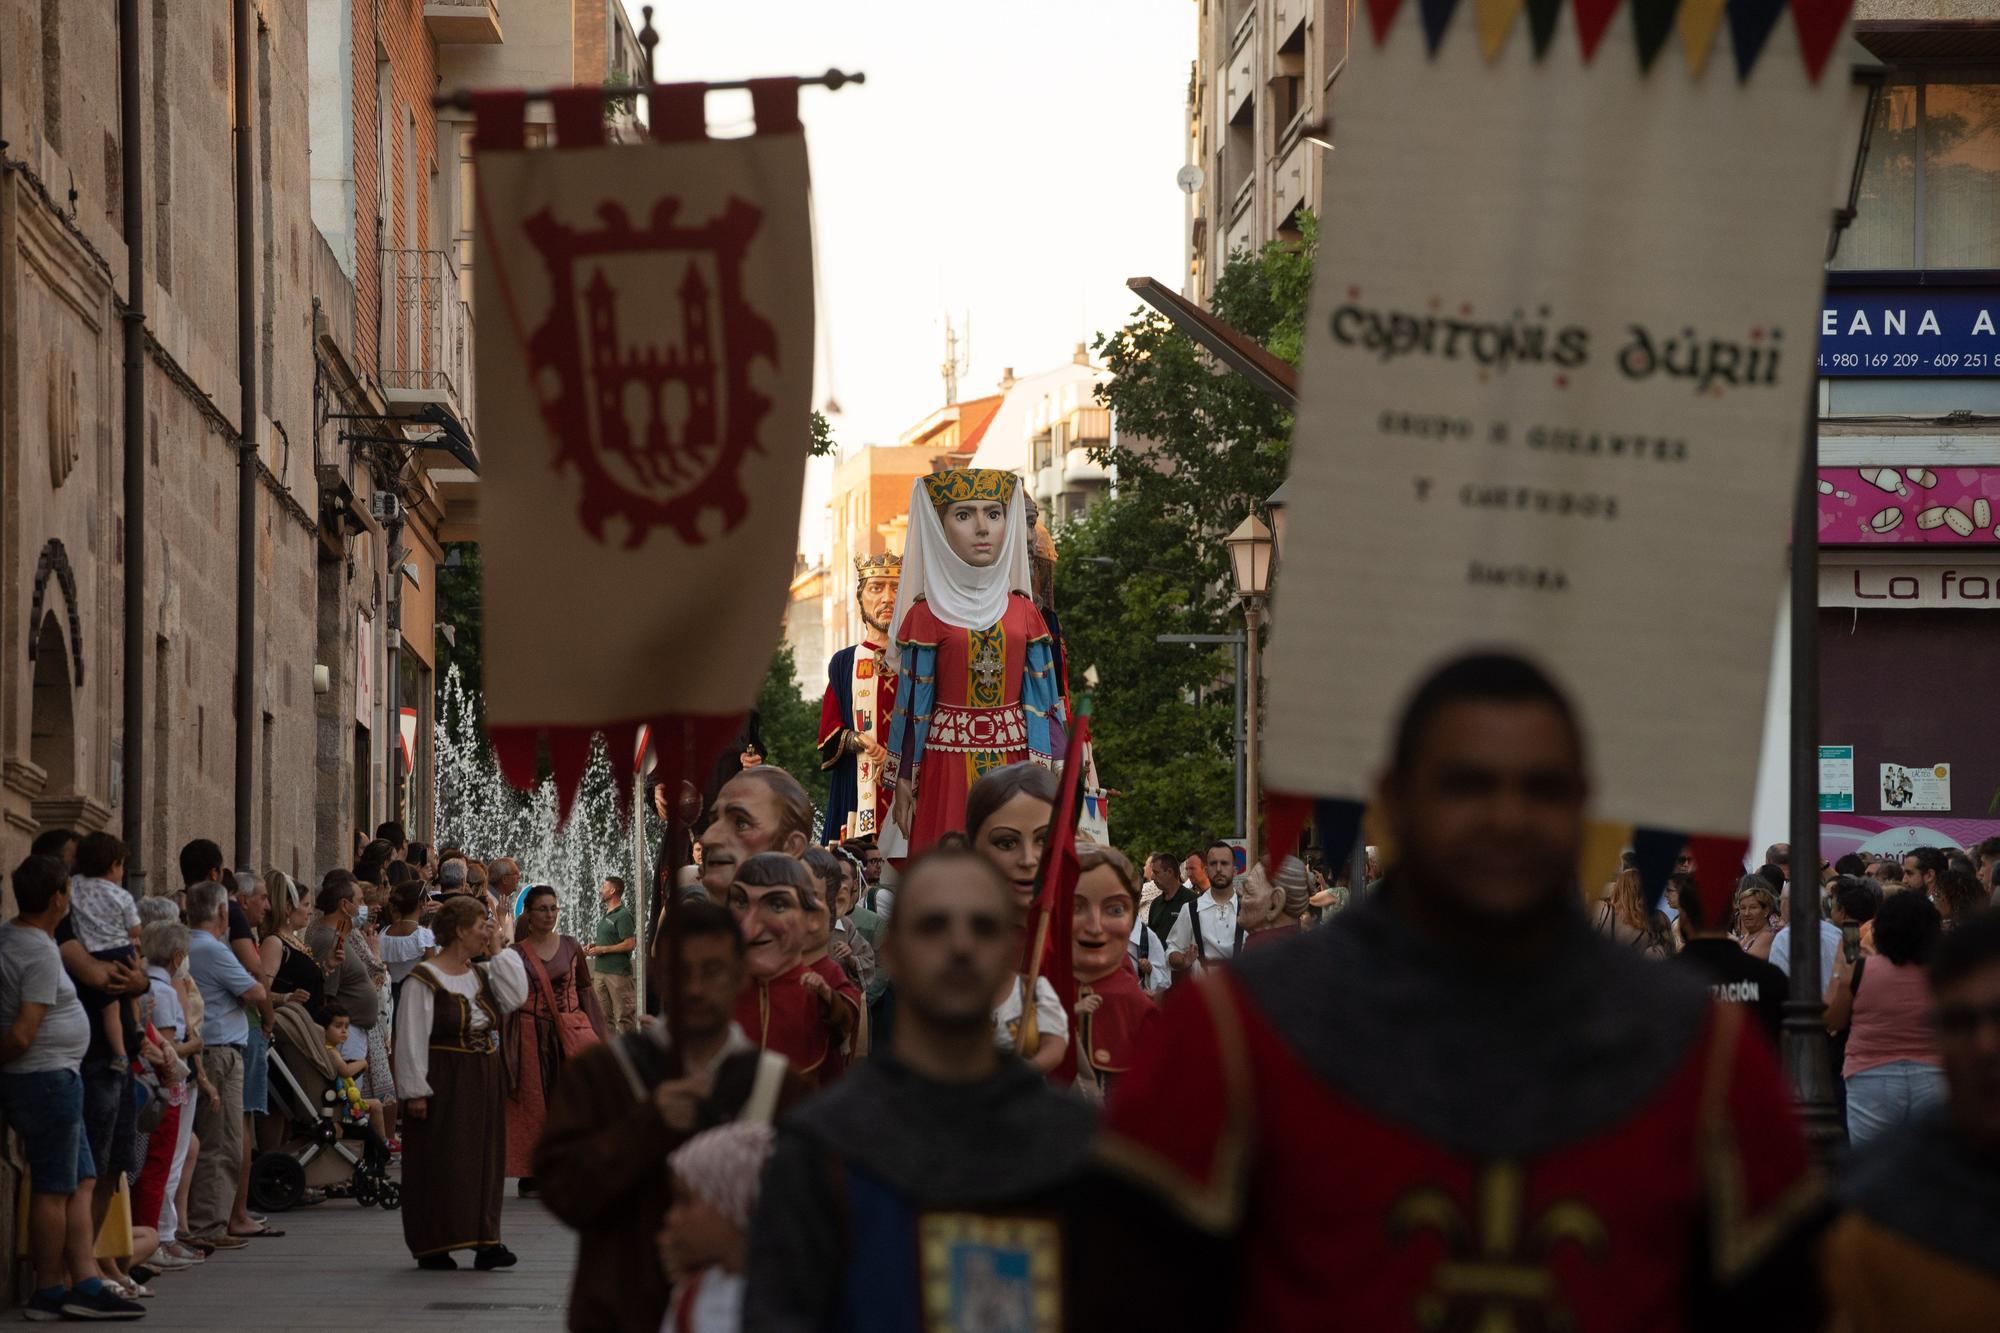 GALERÍA | Capitonis Durii protagoniza el desfile medieval